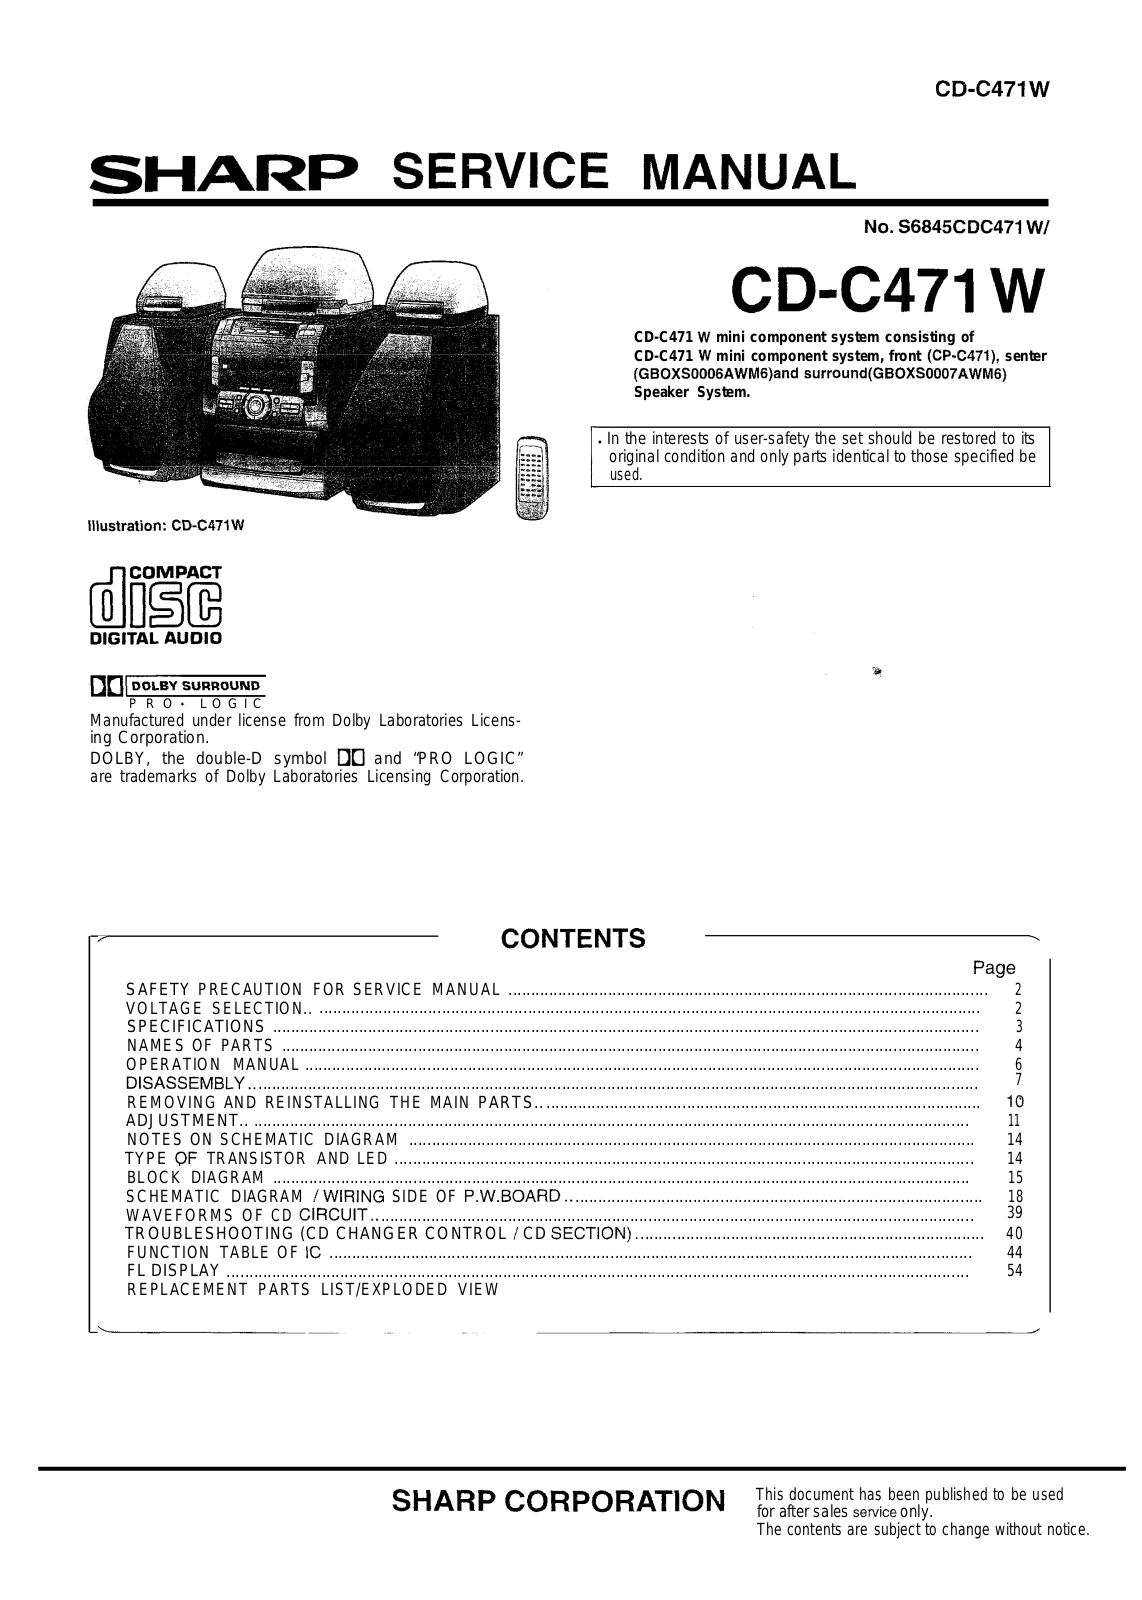 Sharp CD-C471 Schematic